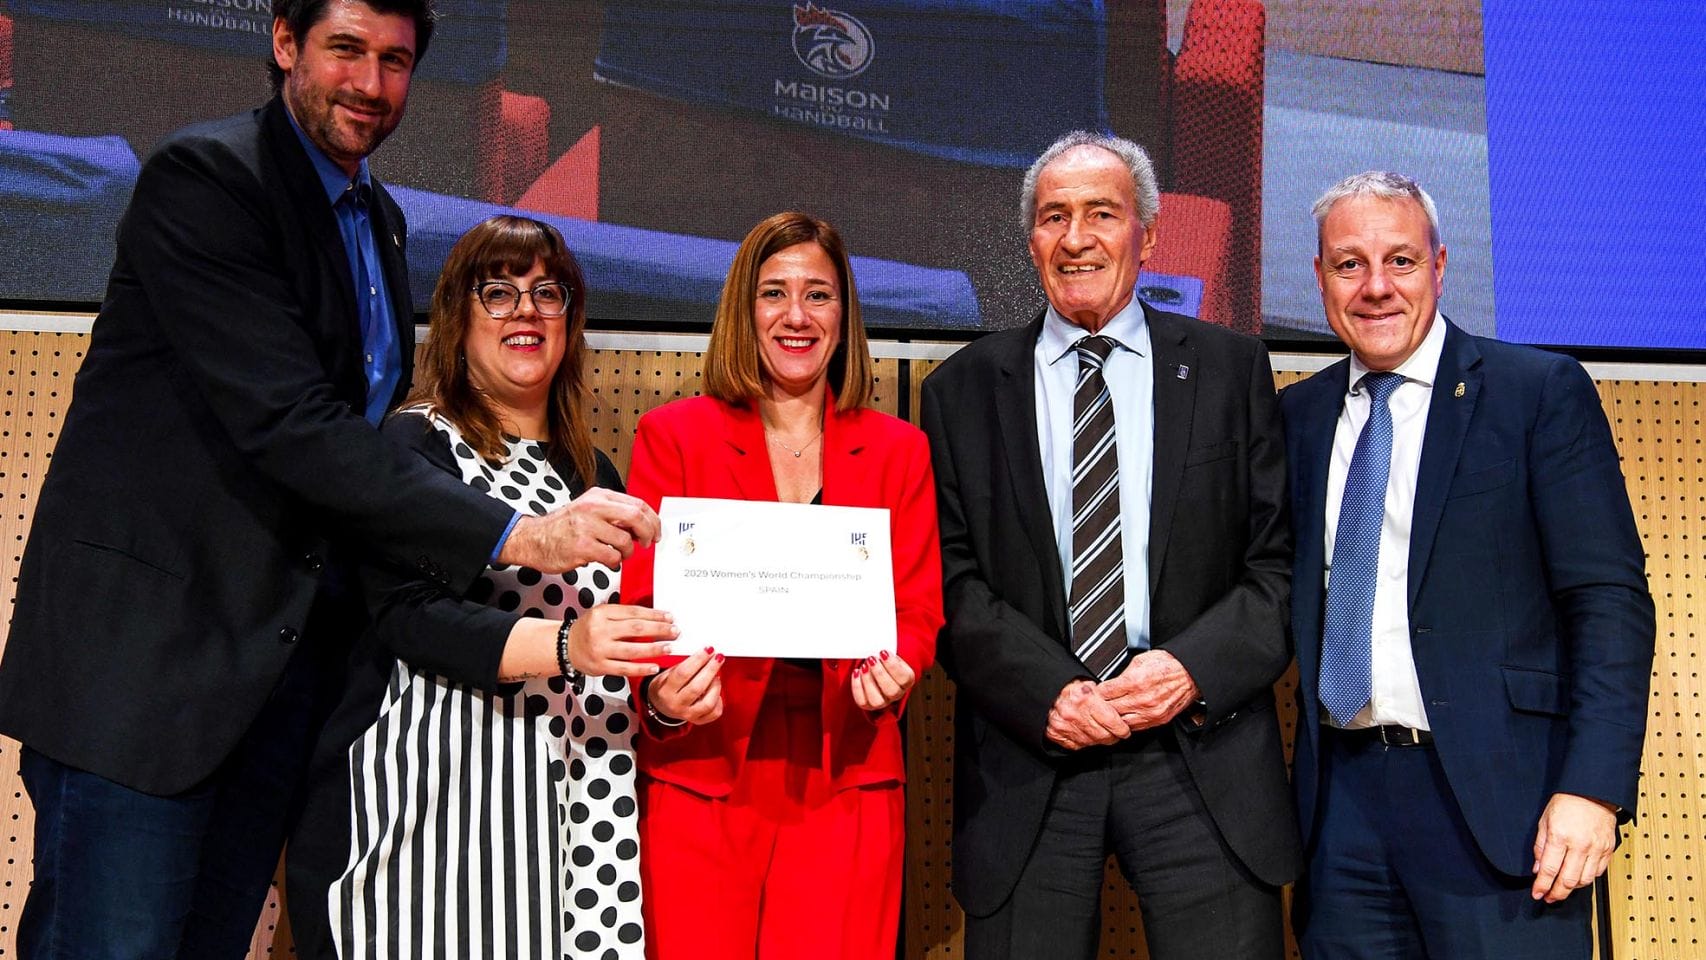 La federación internacional escogió la candidatura española para organizar el evento